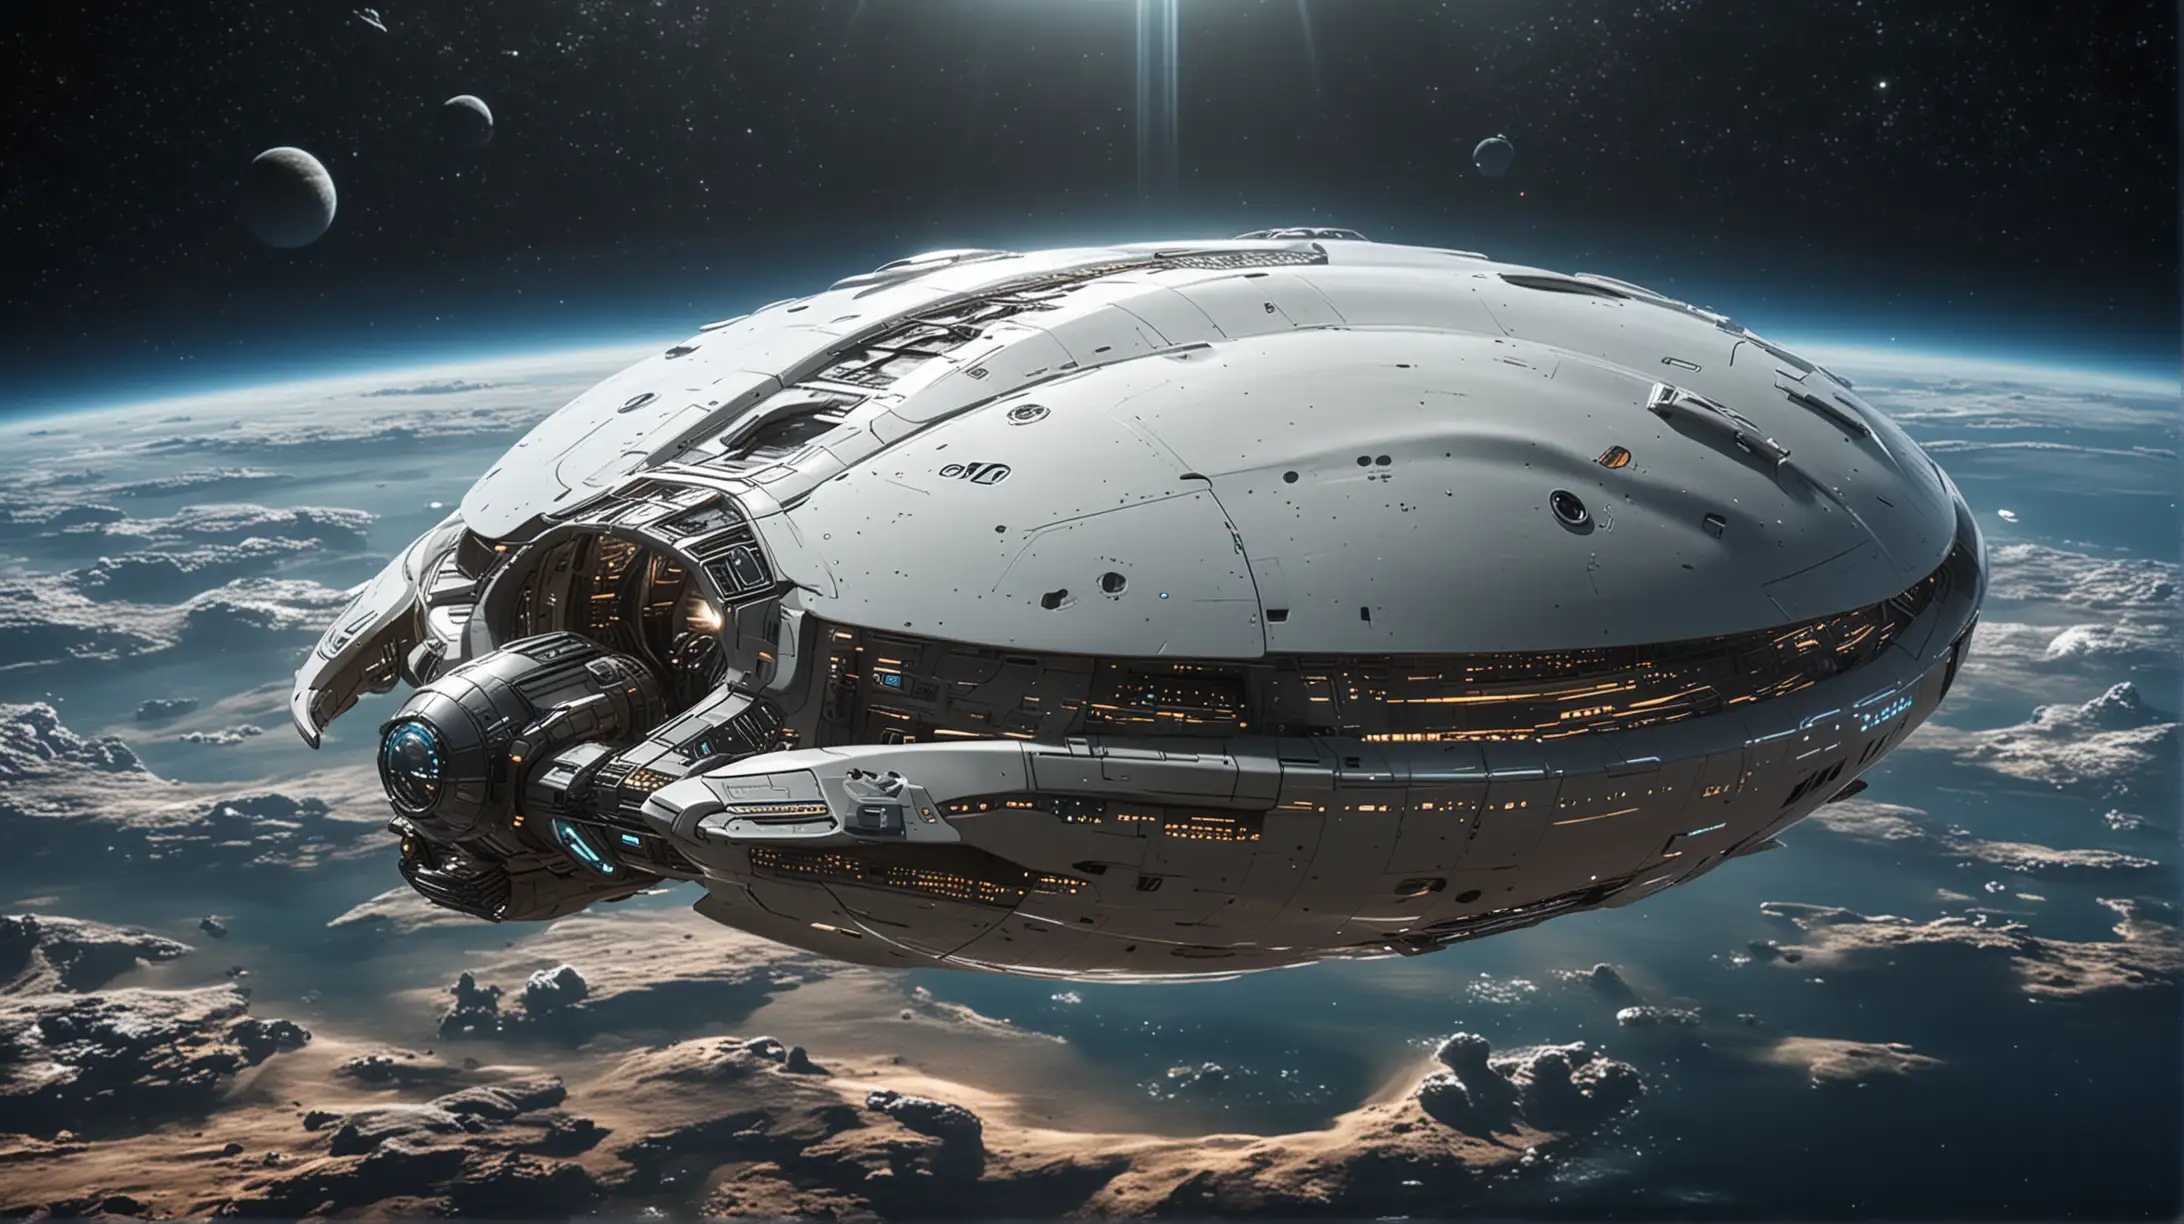 ClamShaped Spaceship in Futuristic SciFi Universe